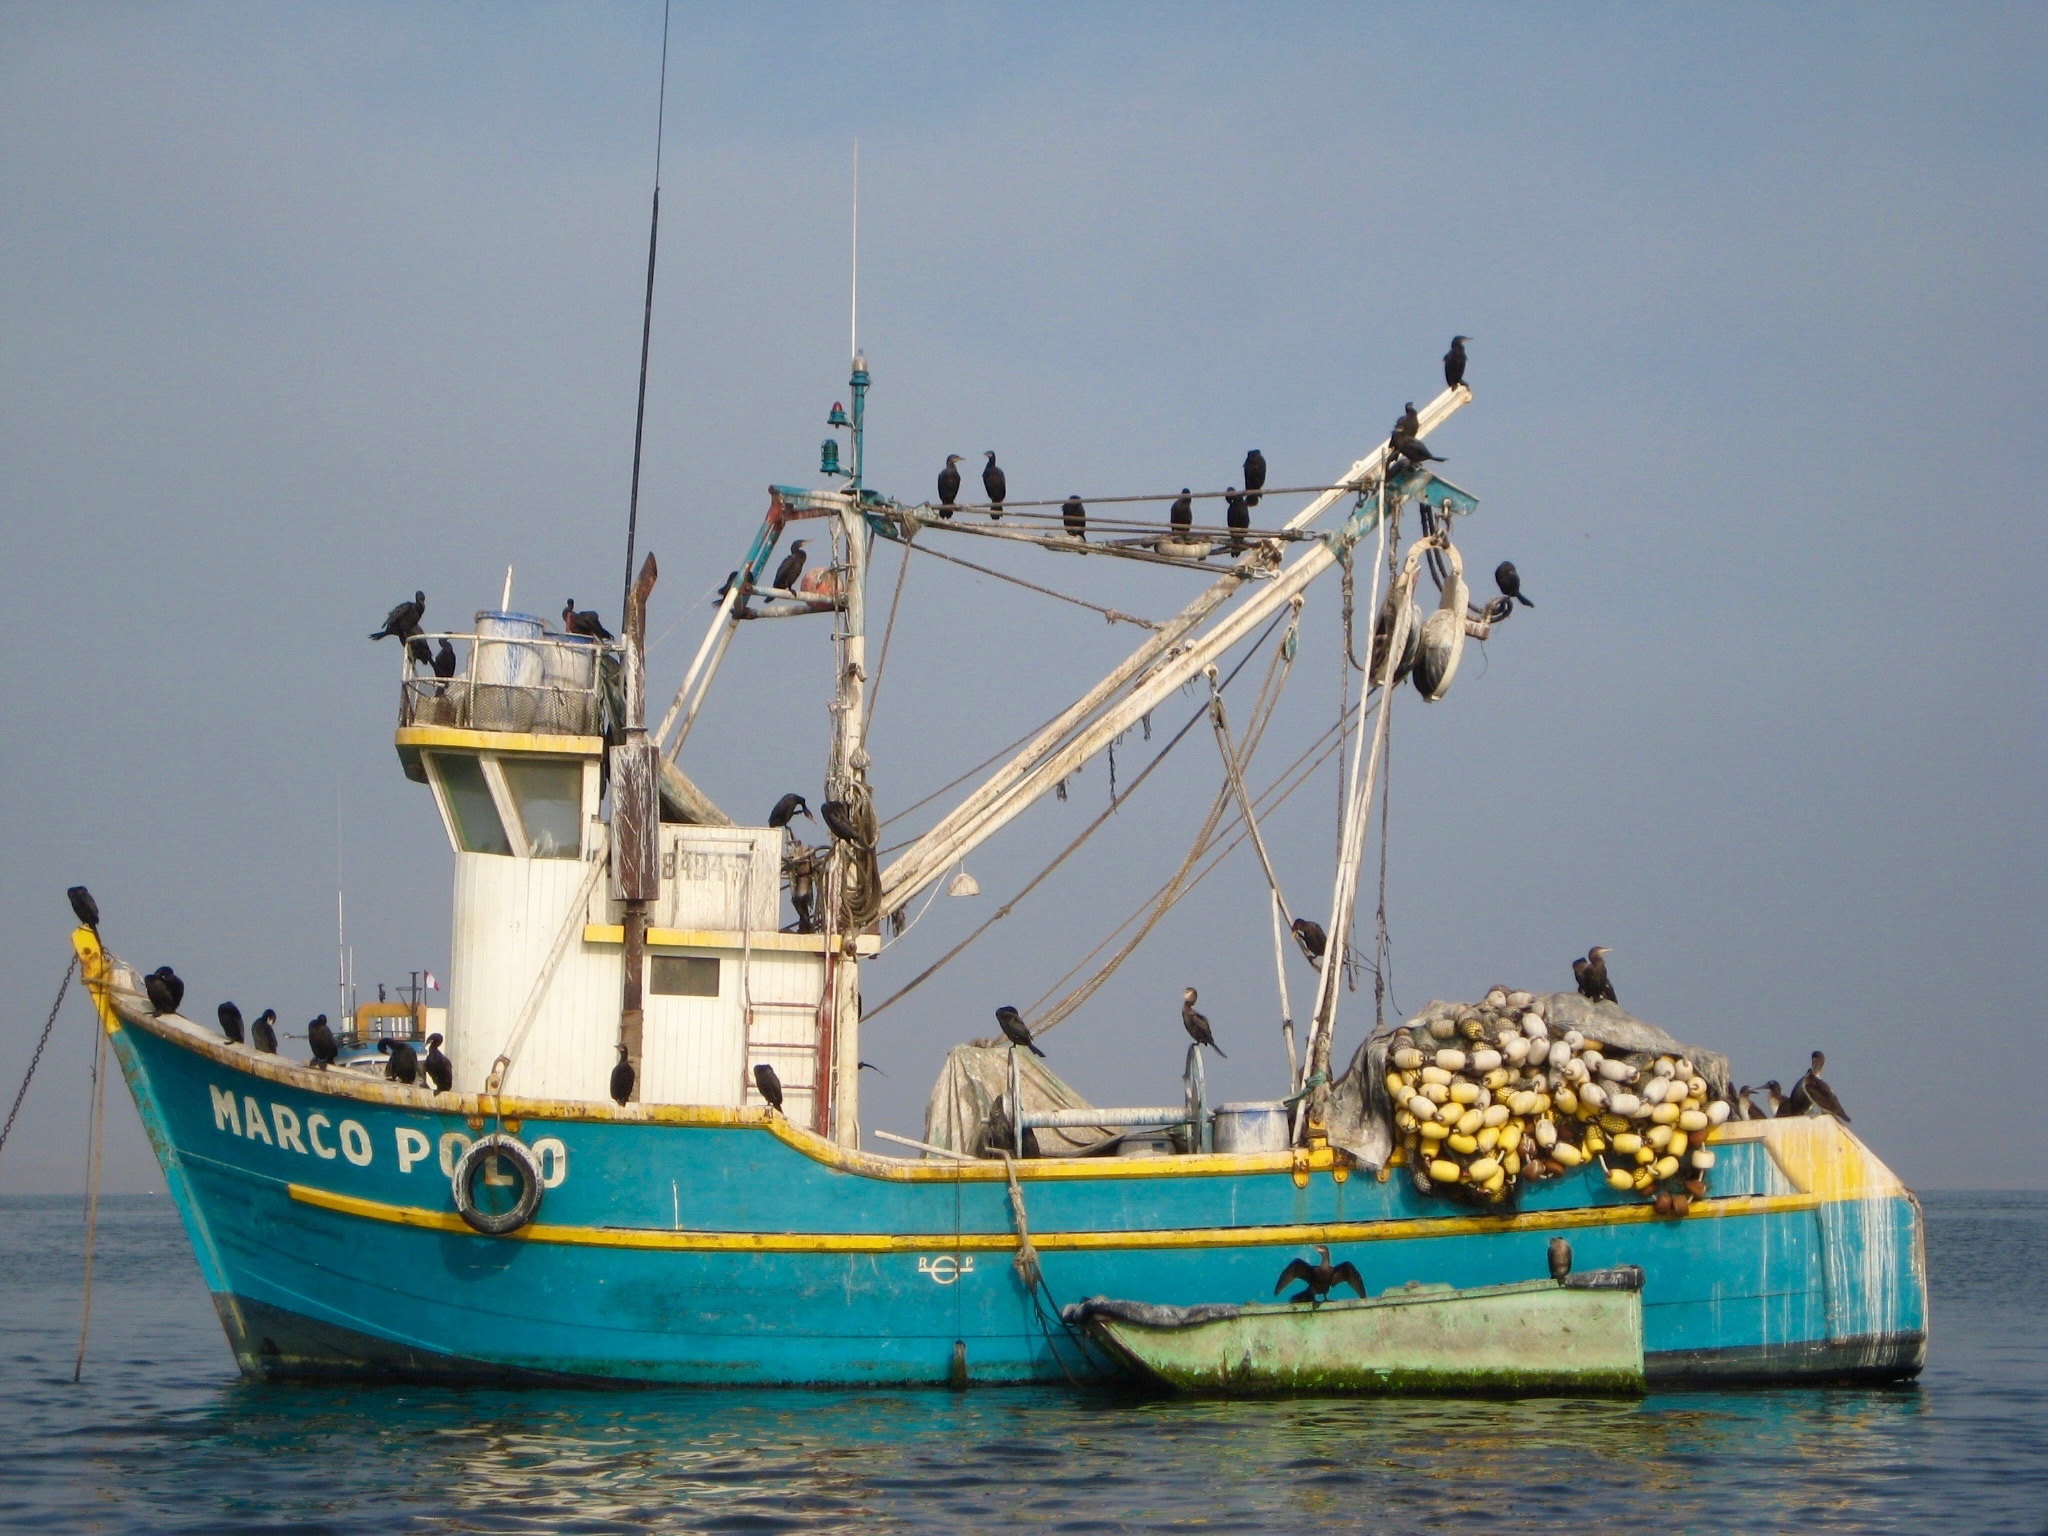 Boat Birds Ecuador free image download